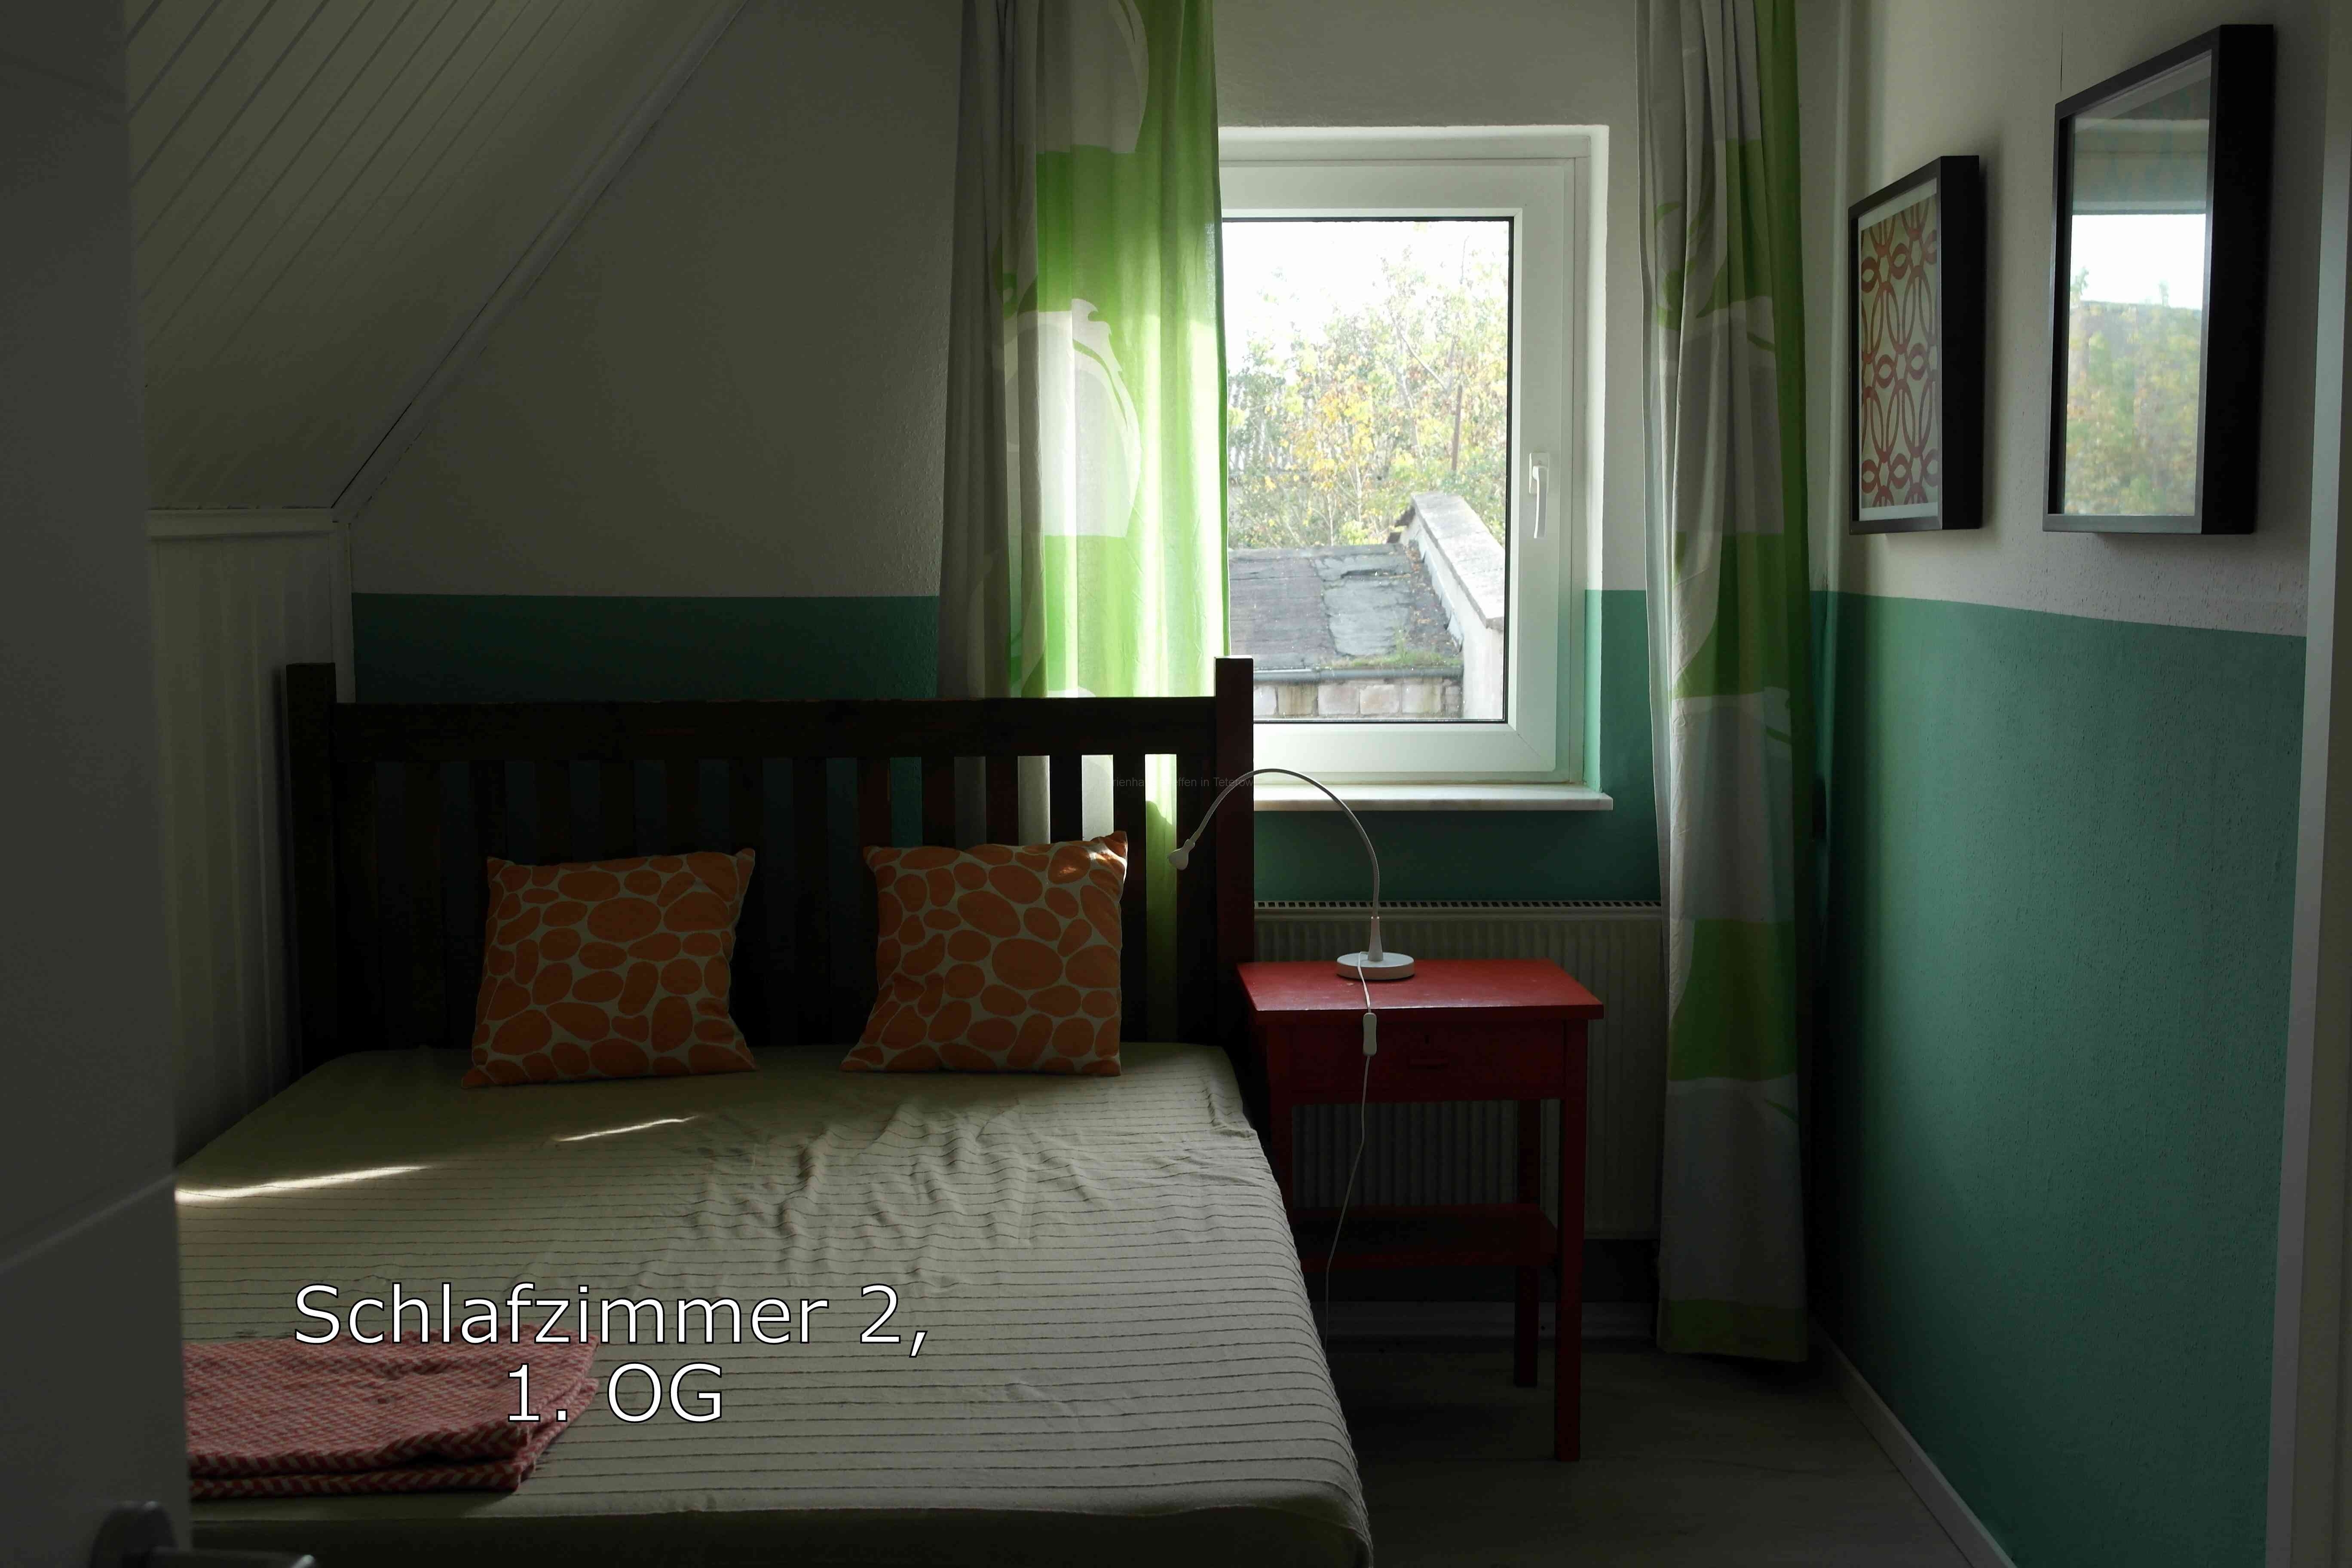 Schlafzimmer 2 im OG - Ferienhaus Steffen in Teterow.jpg